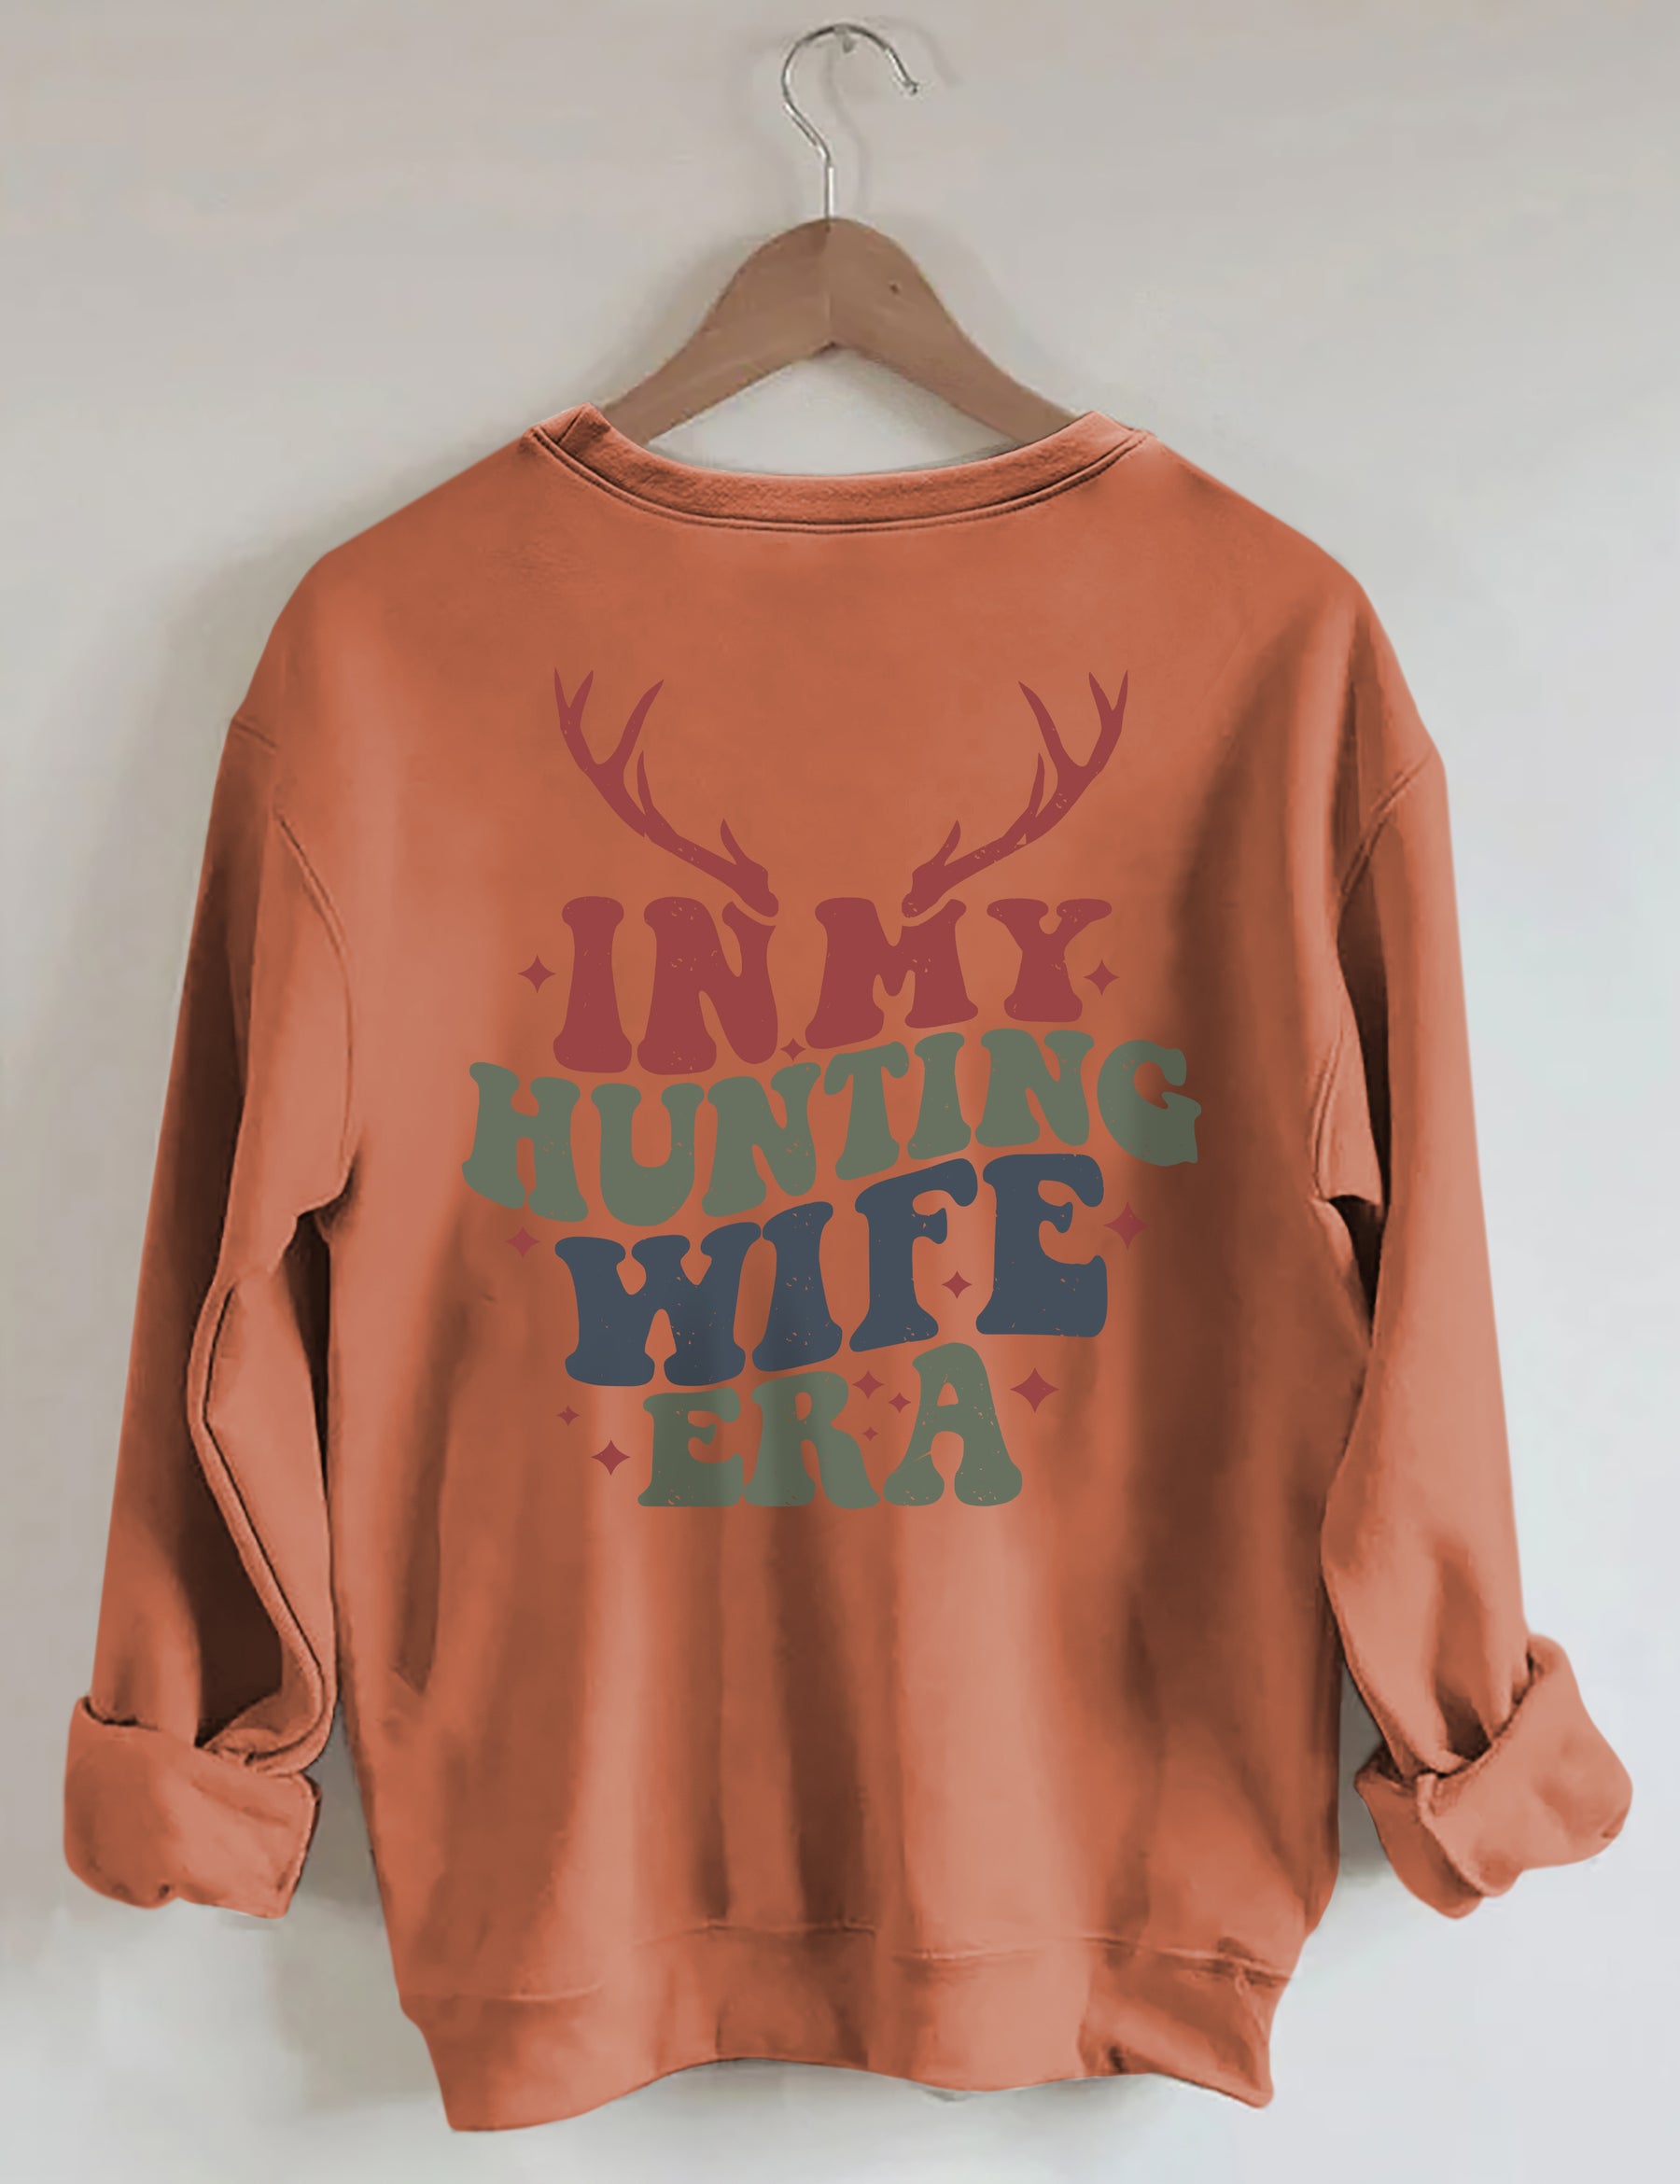 In My Hunting Wife Era Sweatshirt